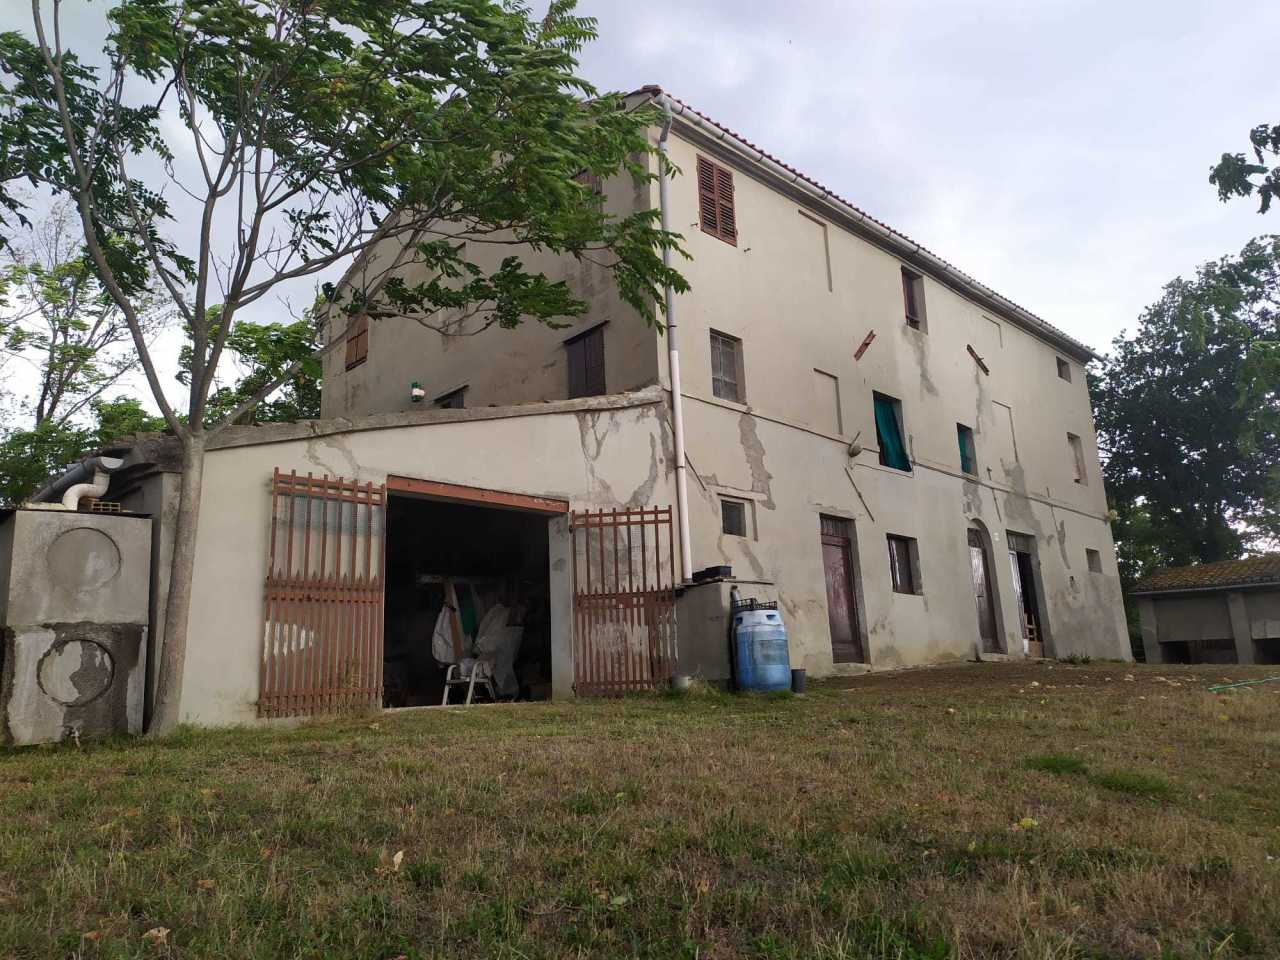 Rustico / Casale in vendita a Morro d'Alba, 9999 locali, prezzo € 159.000 | PortaleAgenzieImmobiliari.it